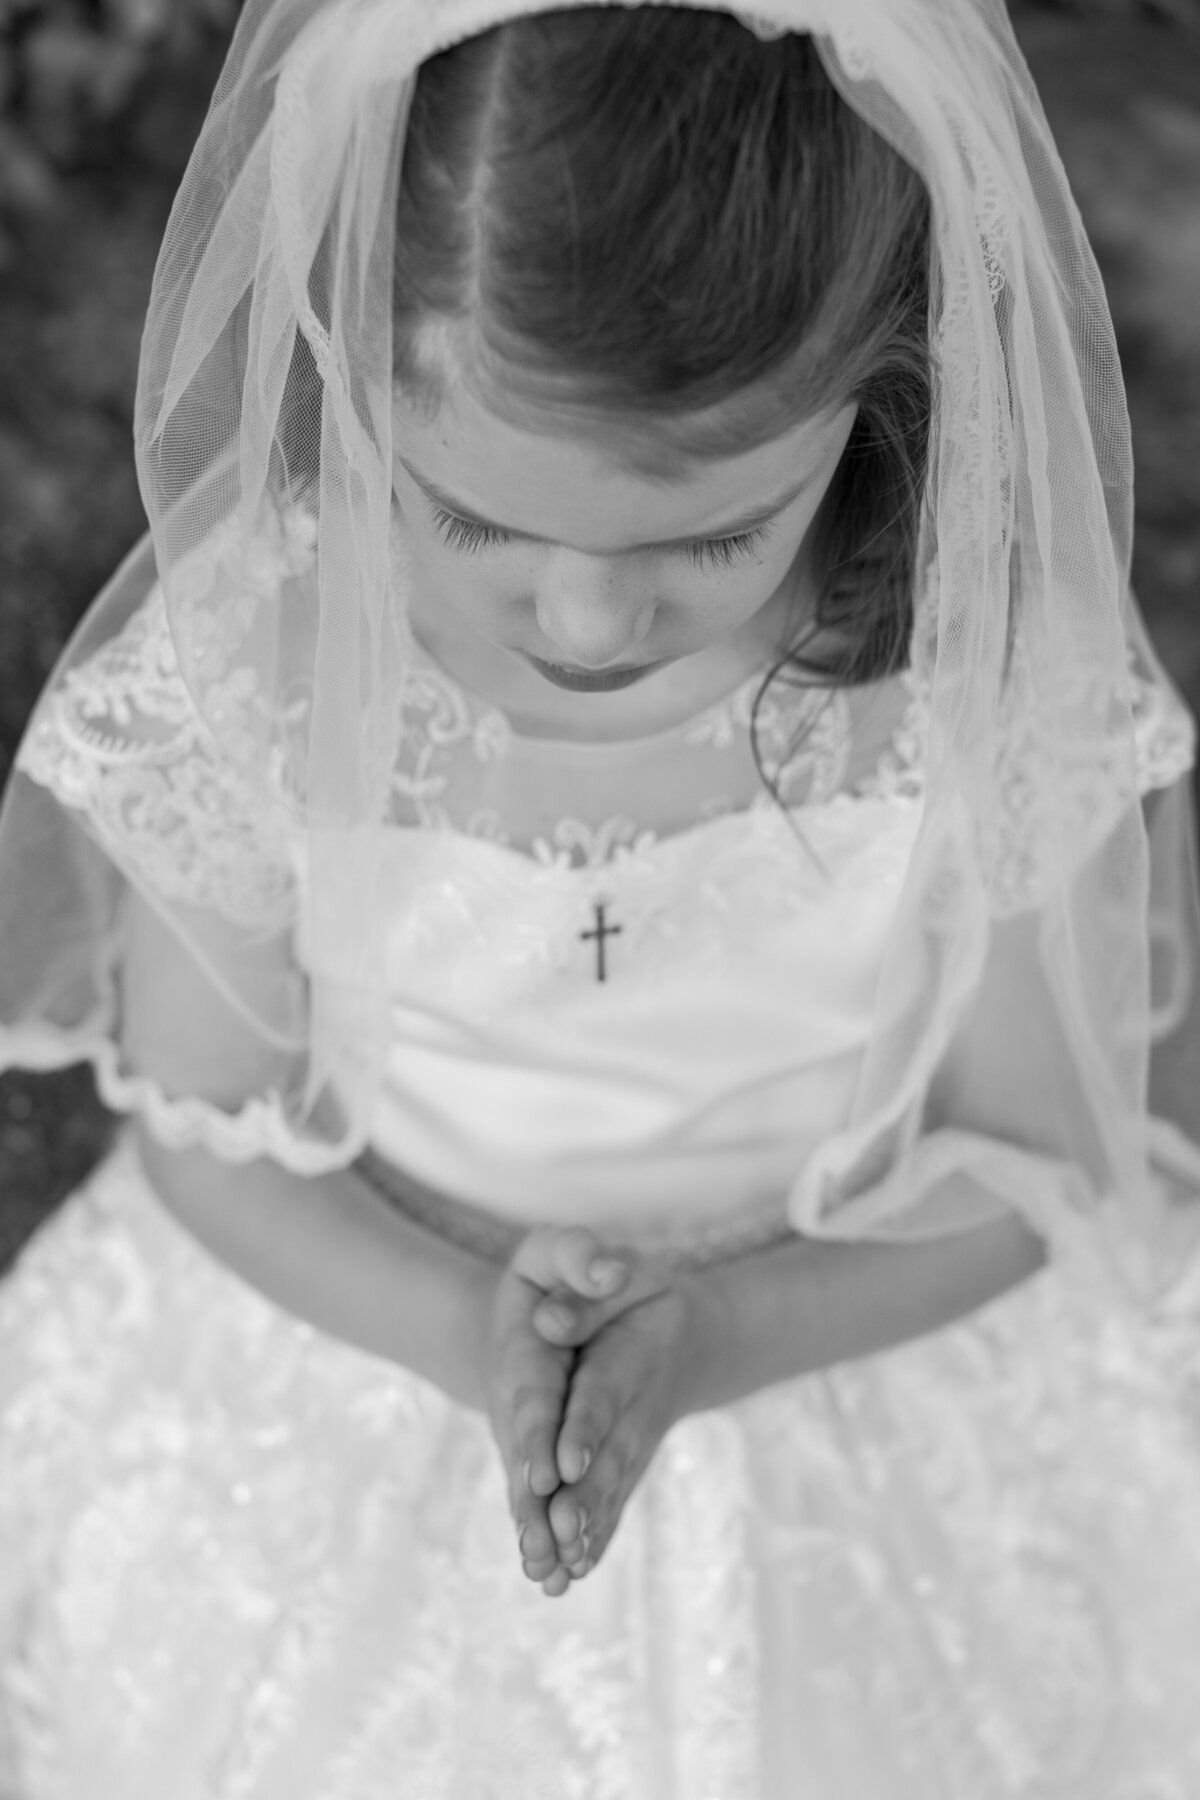 black and white praying child hands